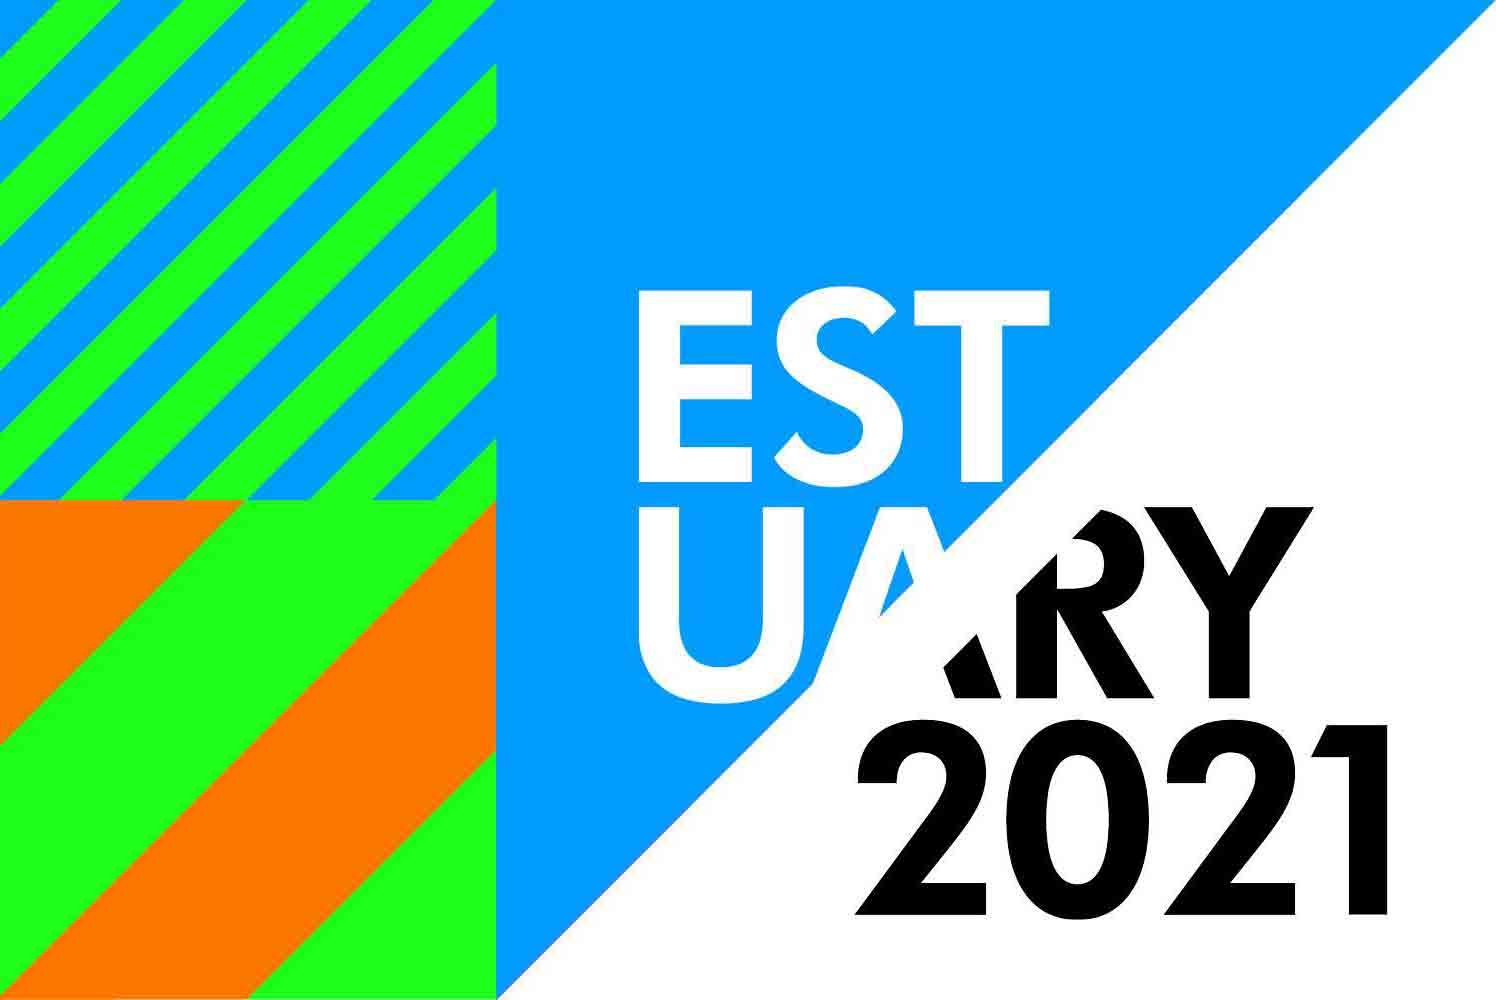 estuary-2021-banner-6.jpg